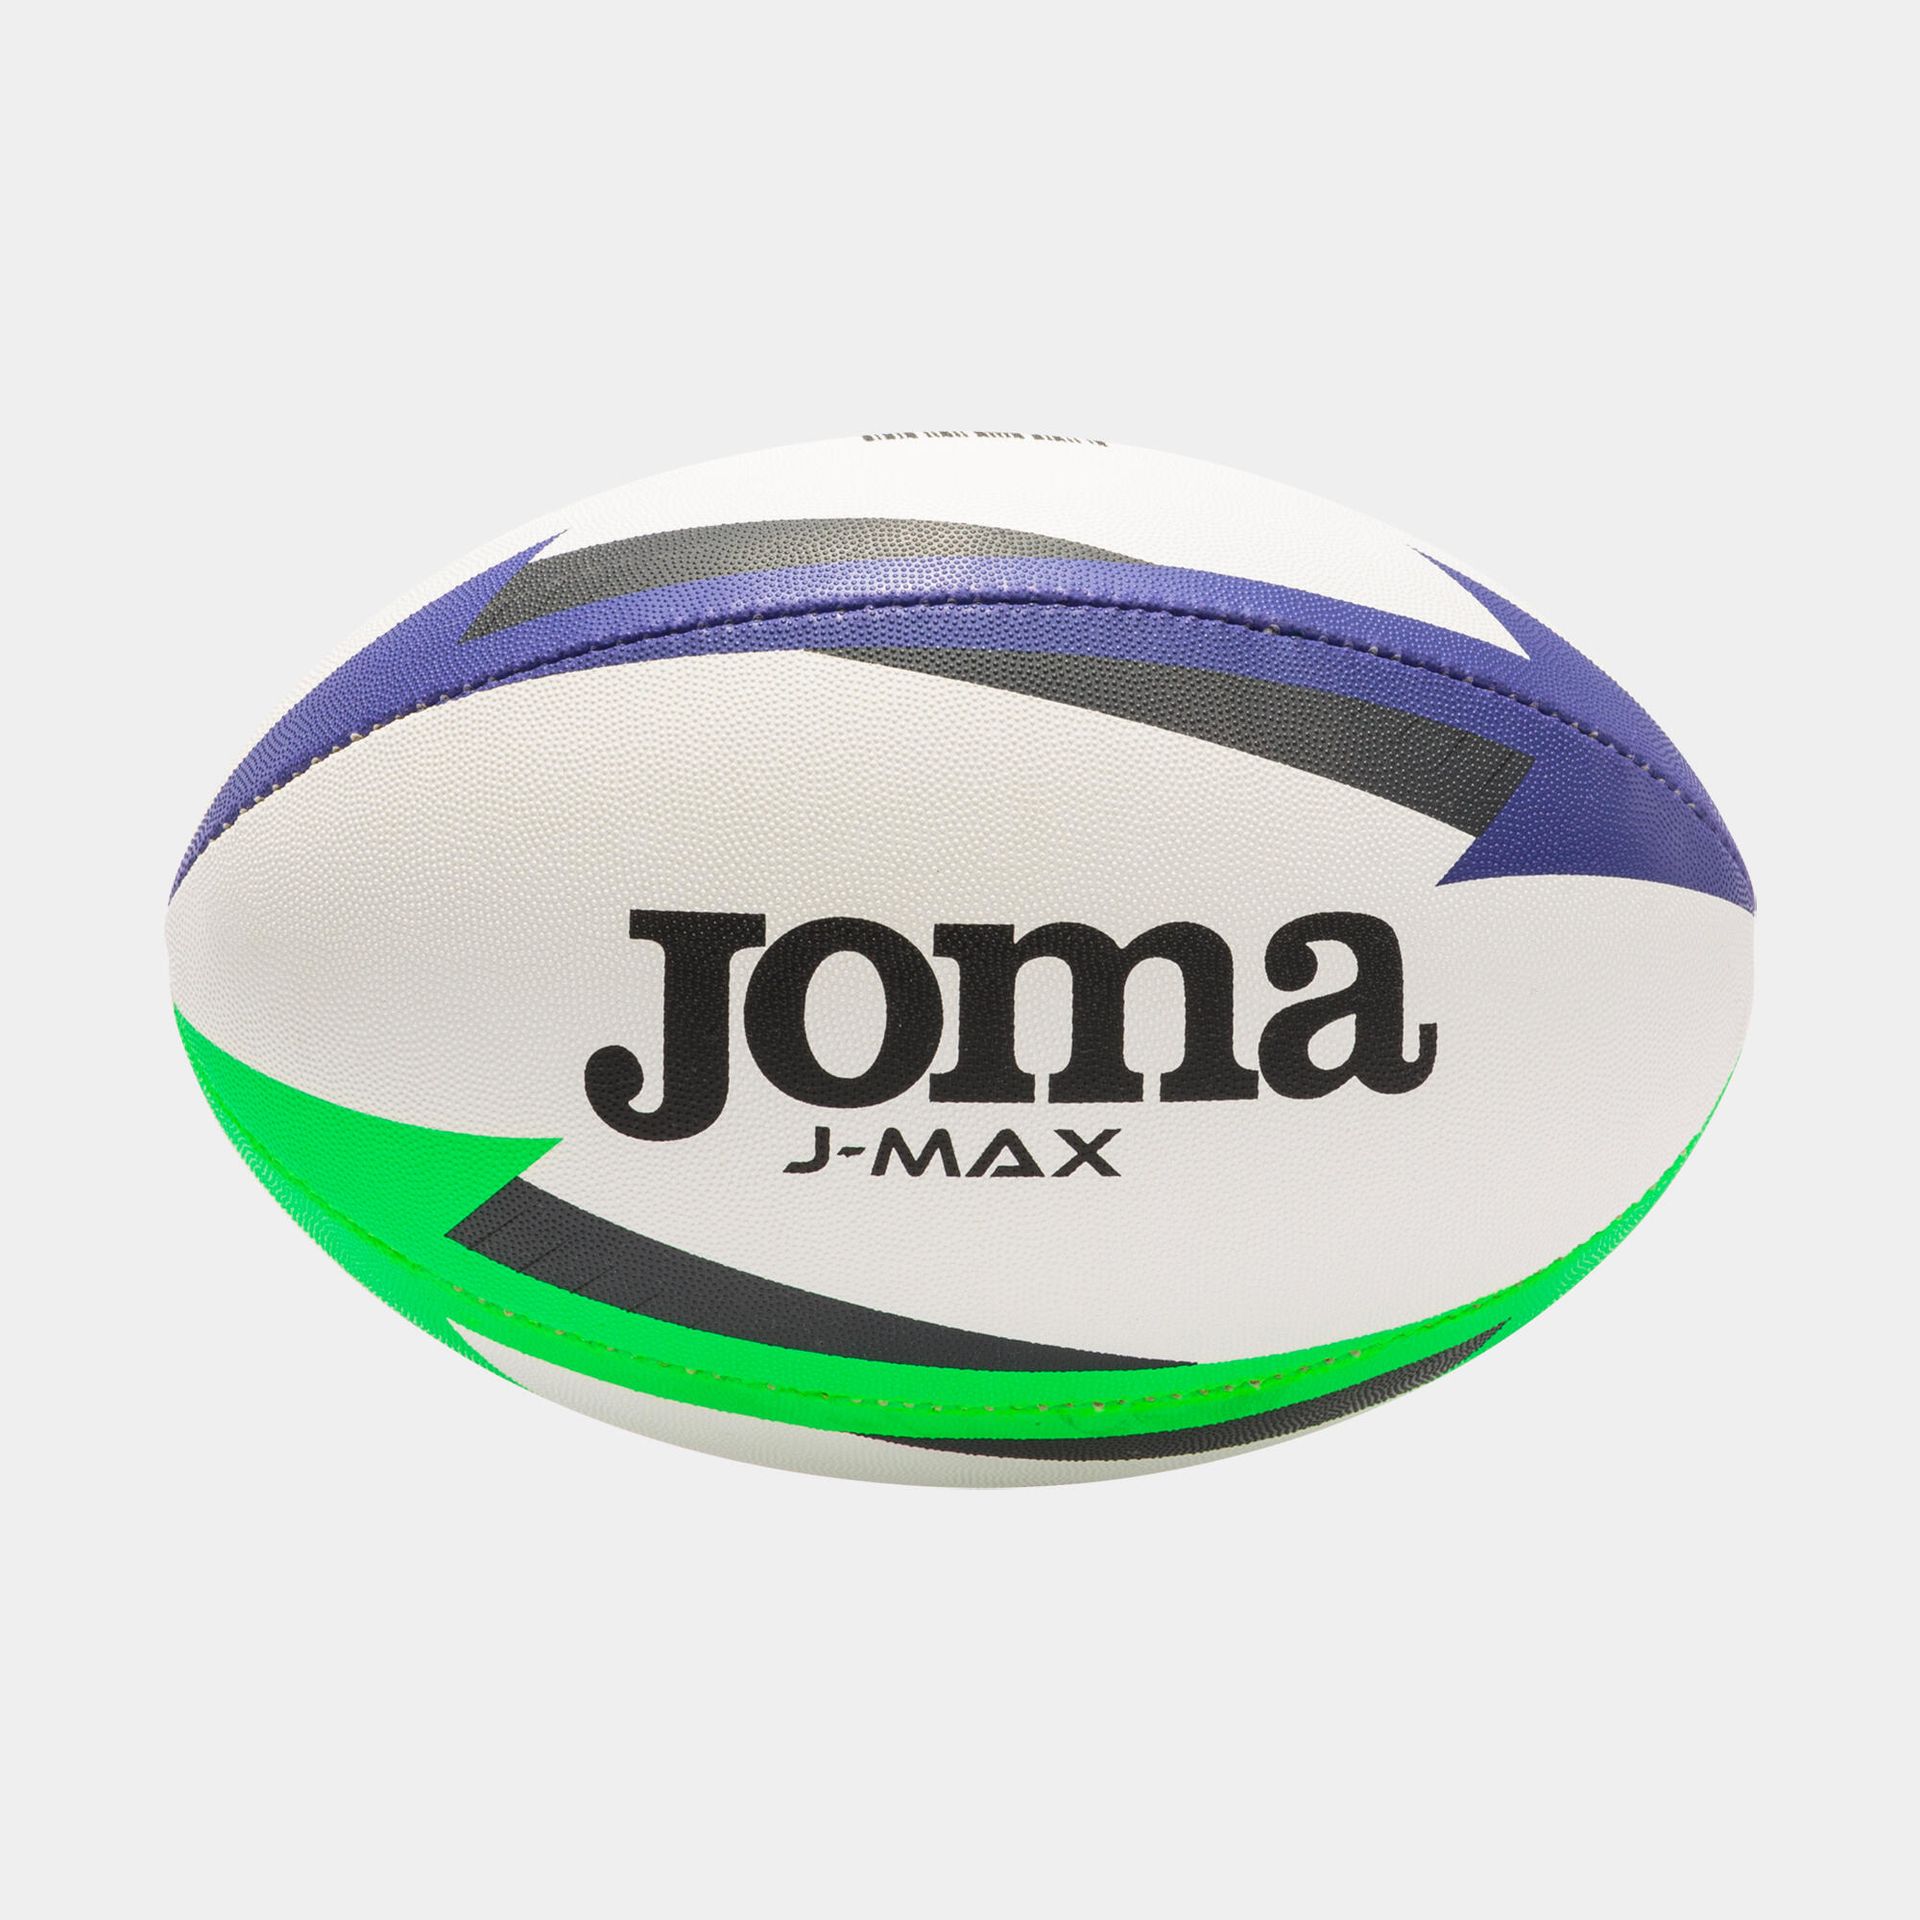 Piłka do Rugby dla dzieci Joma J-Max rozmiar 4